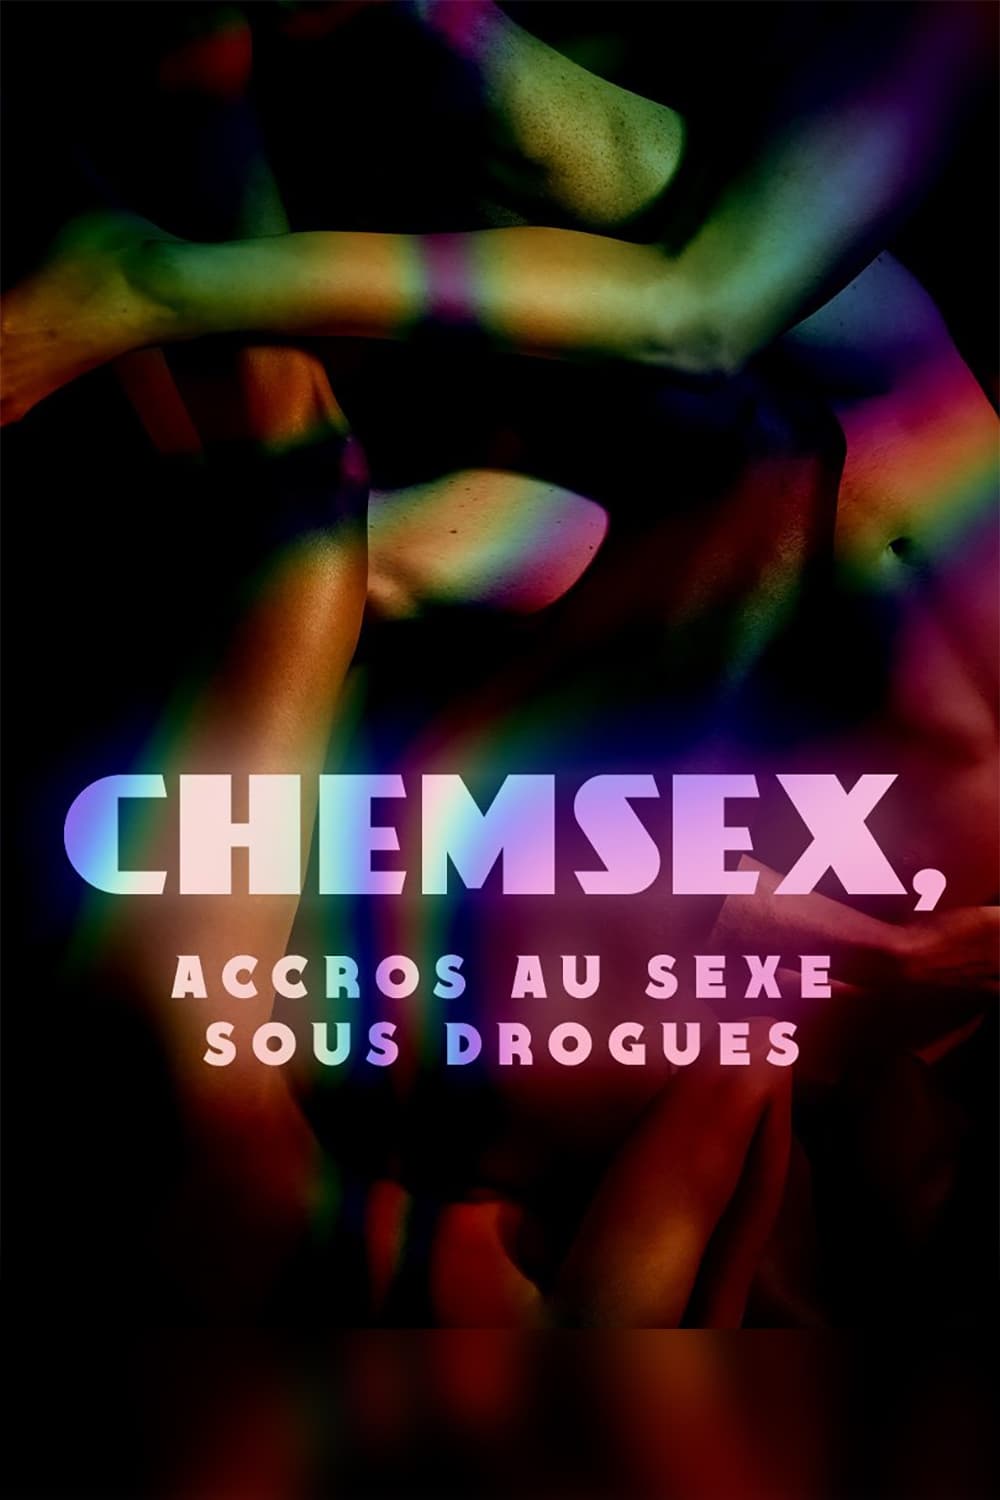 La France en Vrai: Chemsex - Accros au sexe sous drogues